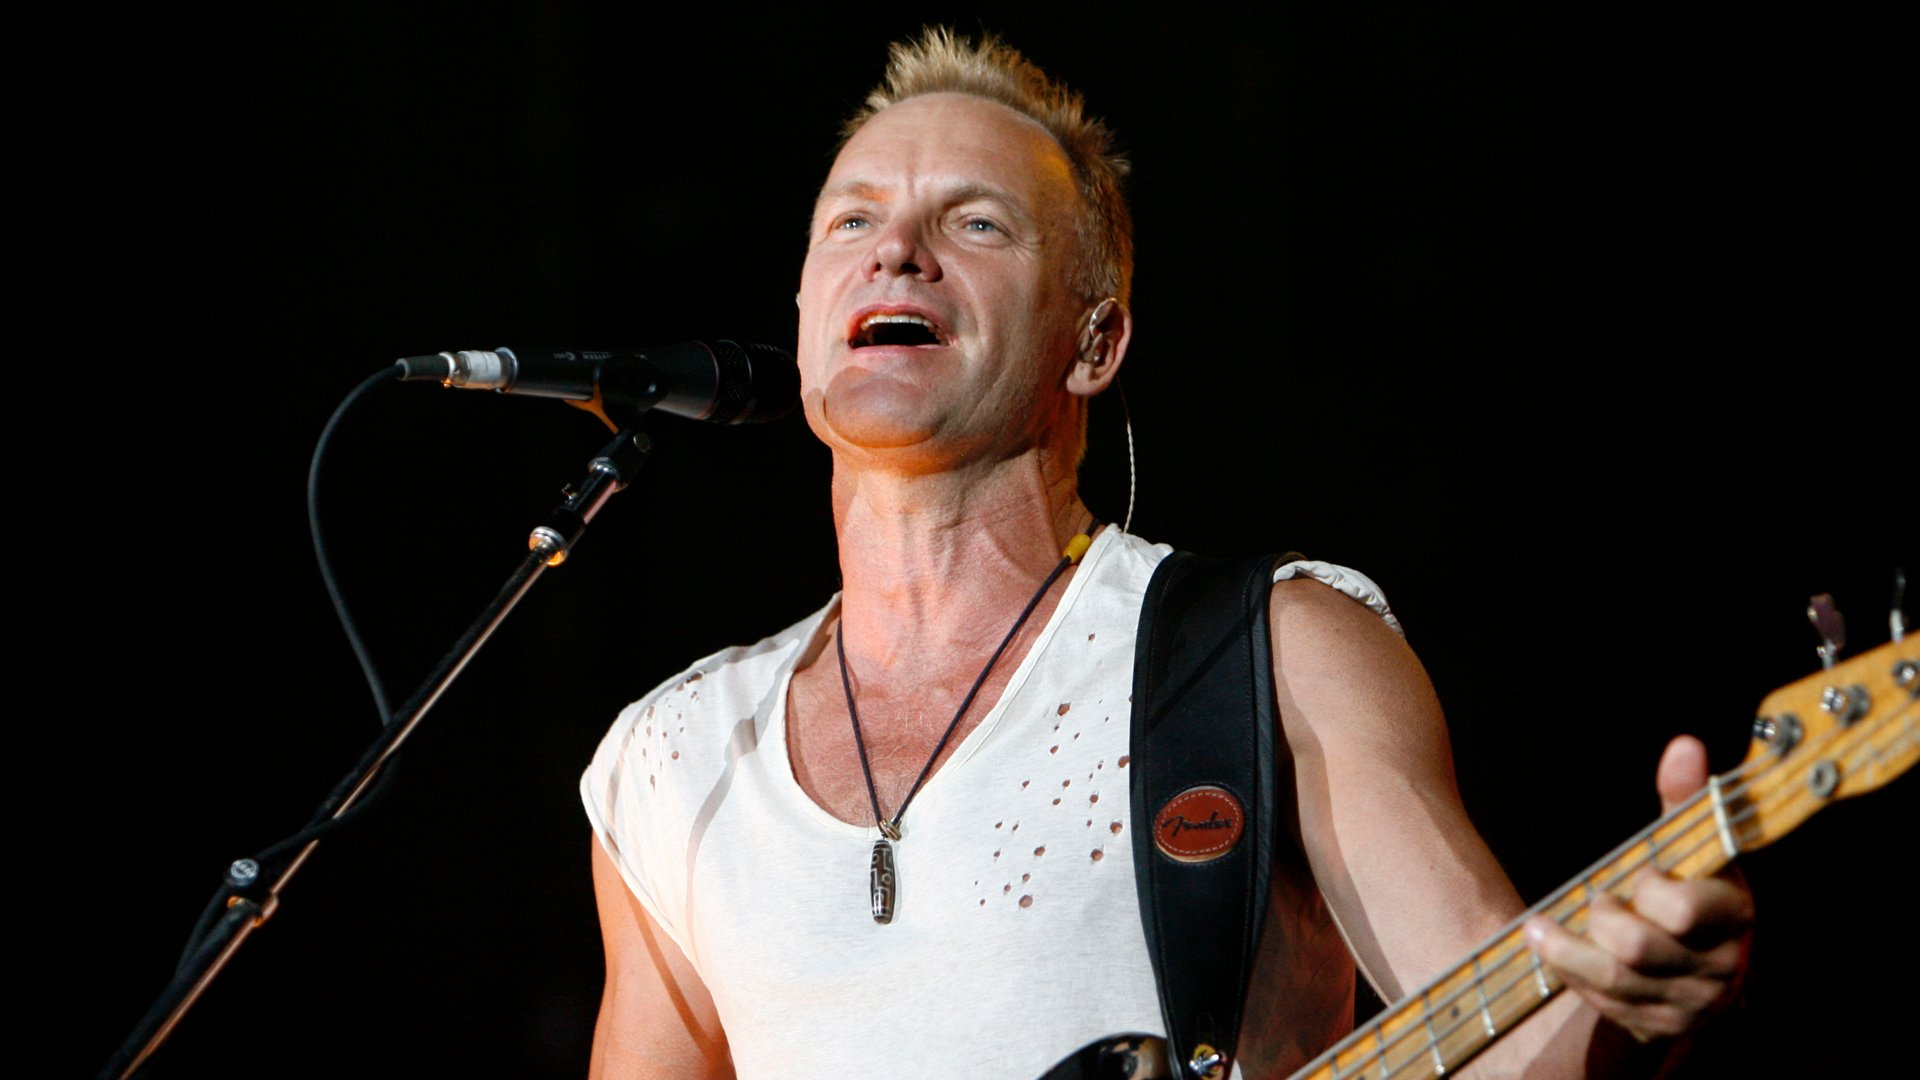 Відео дня. Sting виконує пісню про ядерне озброєння та закликає припинити війну в Україні